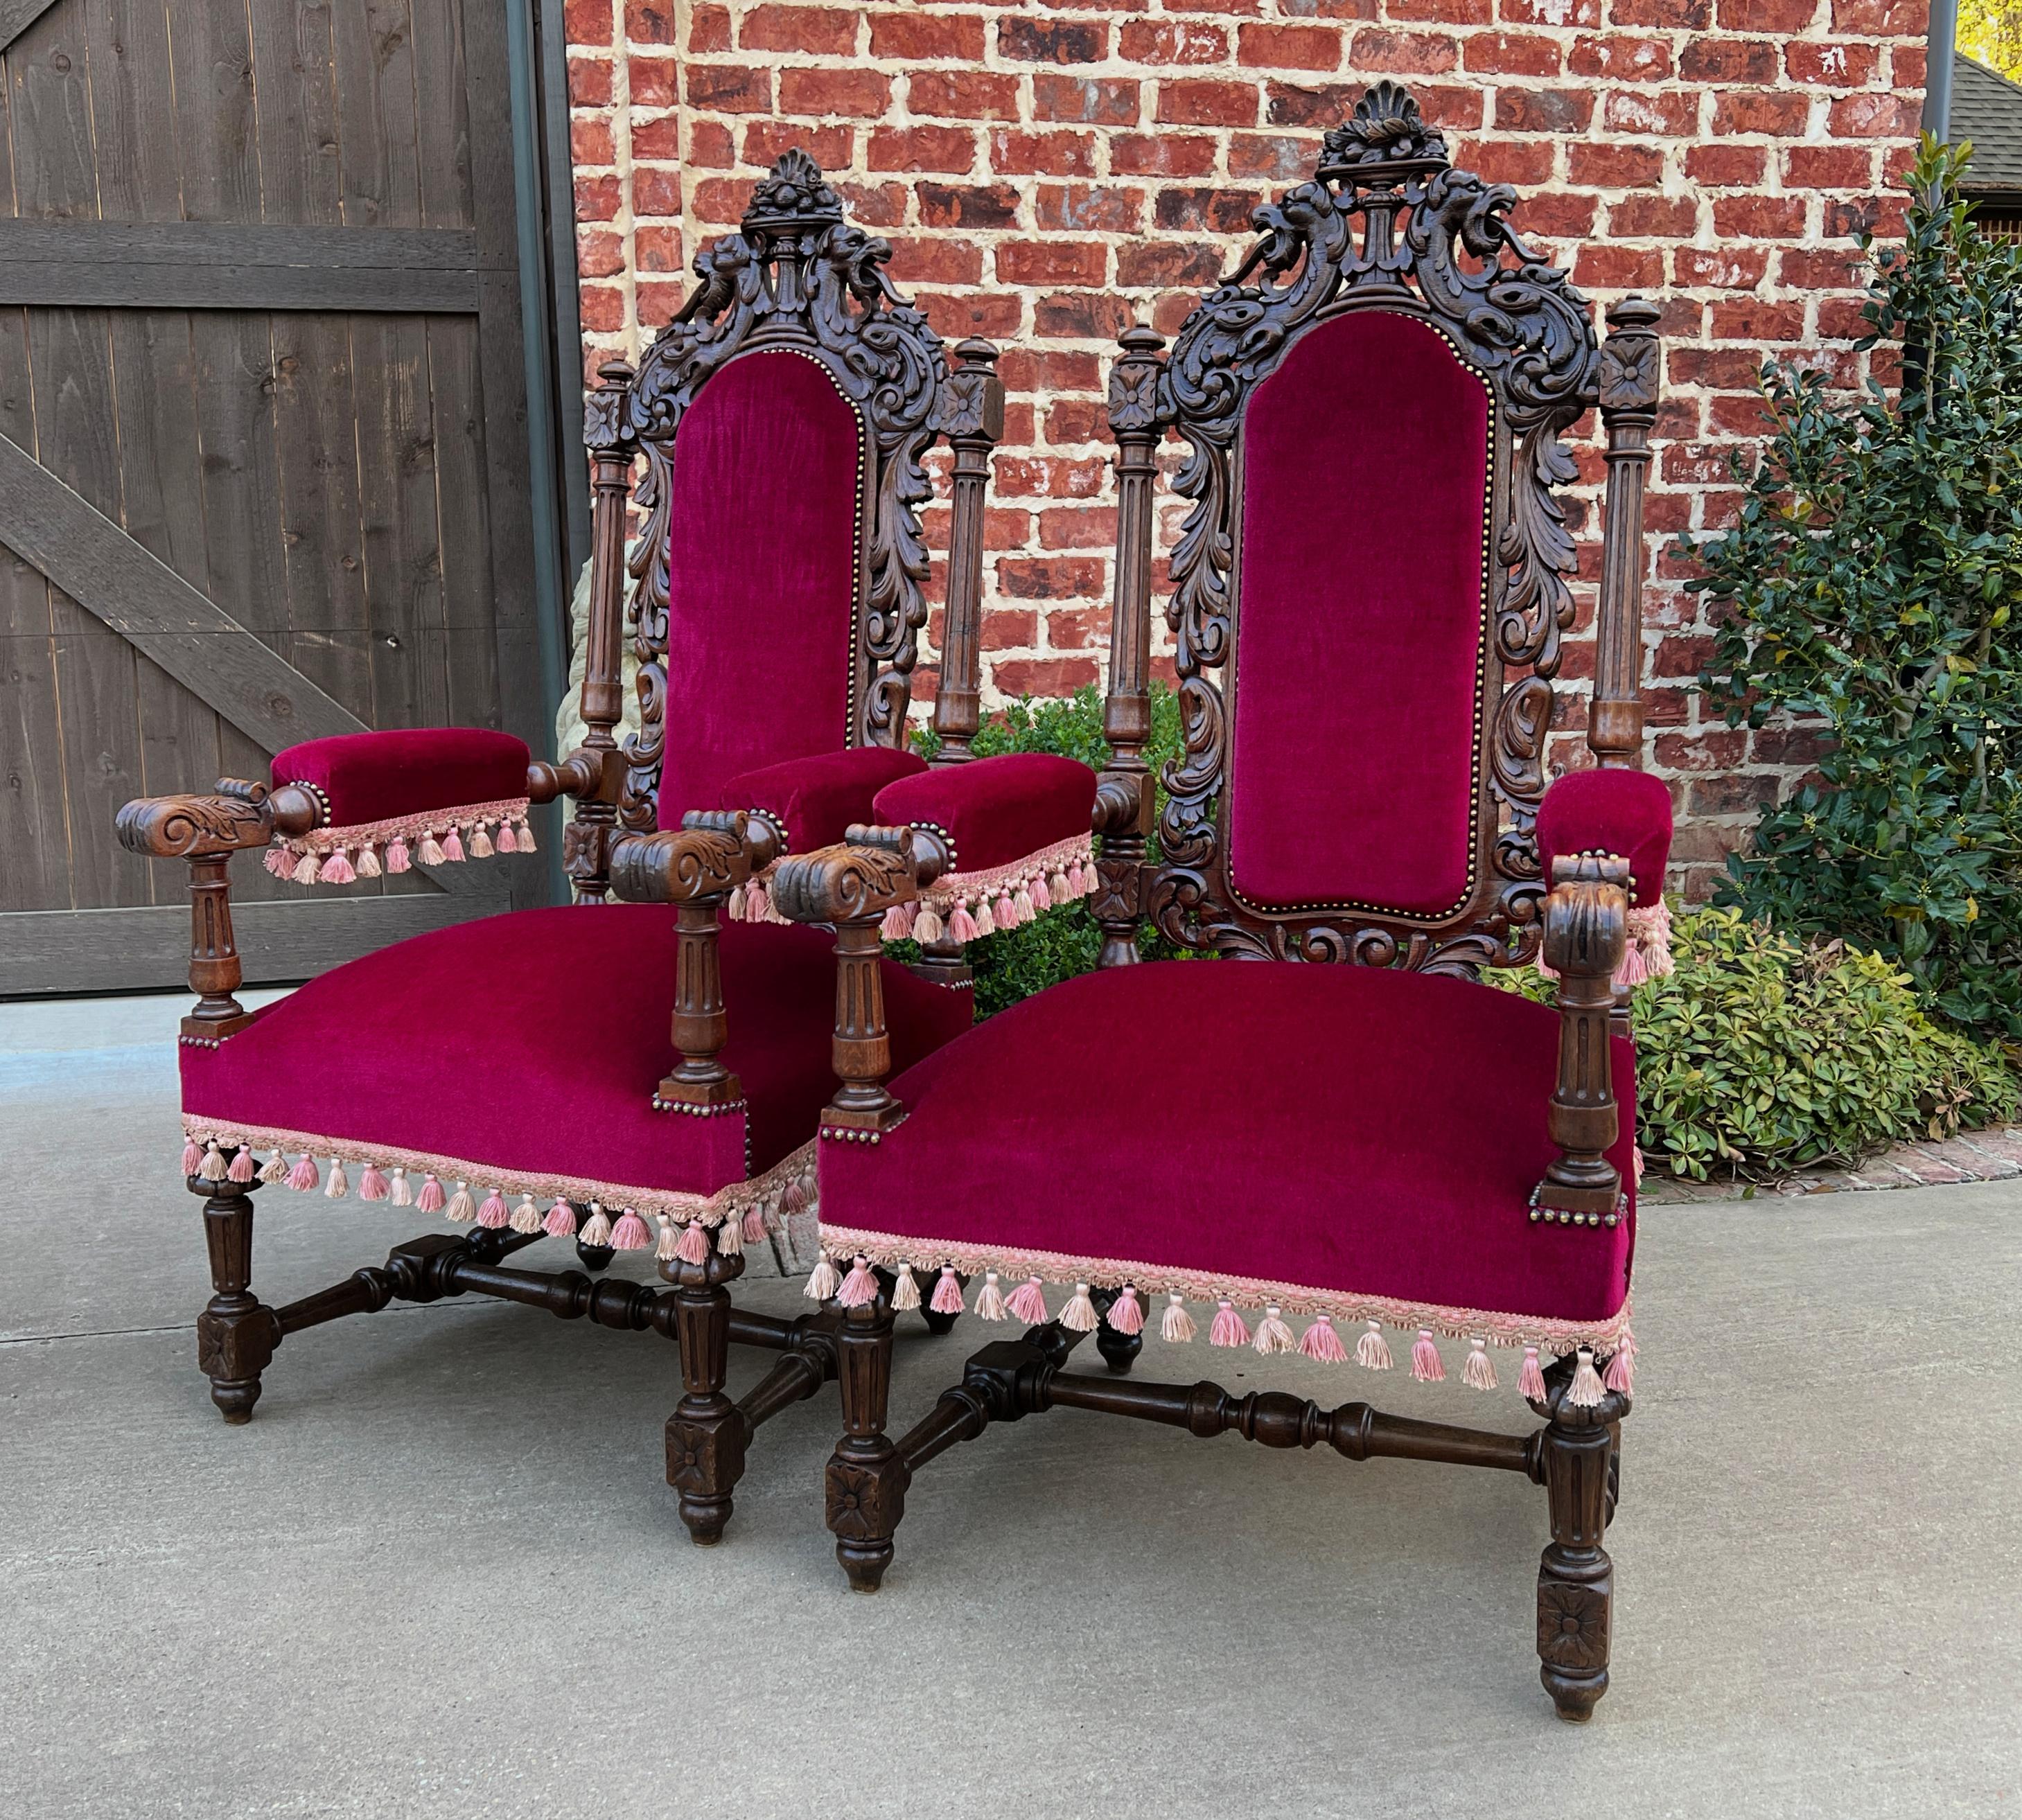 Superbe paire de fauteuils en chêne rembourrés de style renaissance, chaises de trône, fauteuils de cheminée~~large~circa 1880s

Le charme et le style français classique~~une paire majestueuse avec des dossiers, des accoudoirs et des pieds très